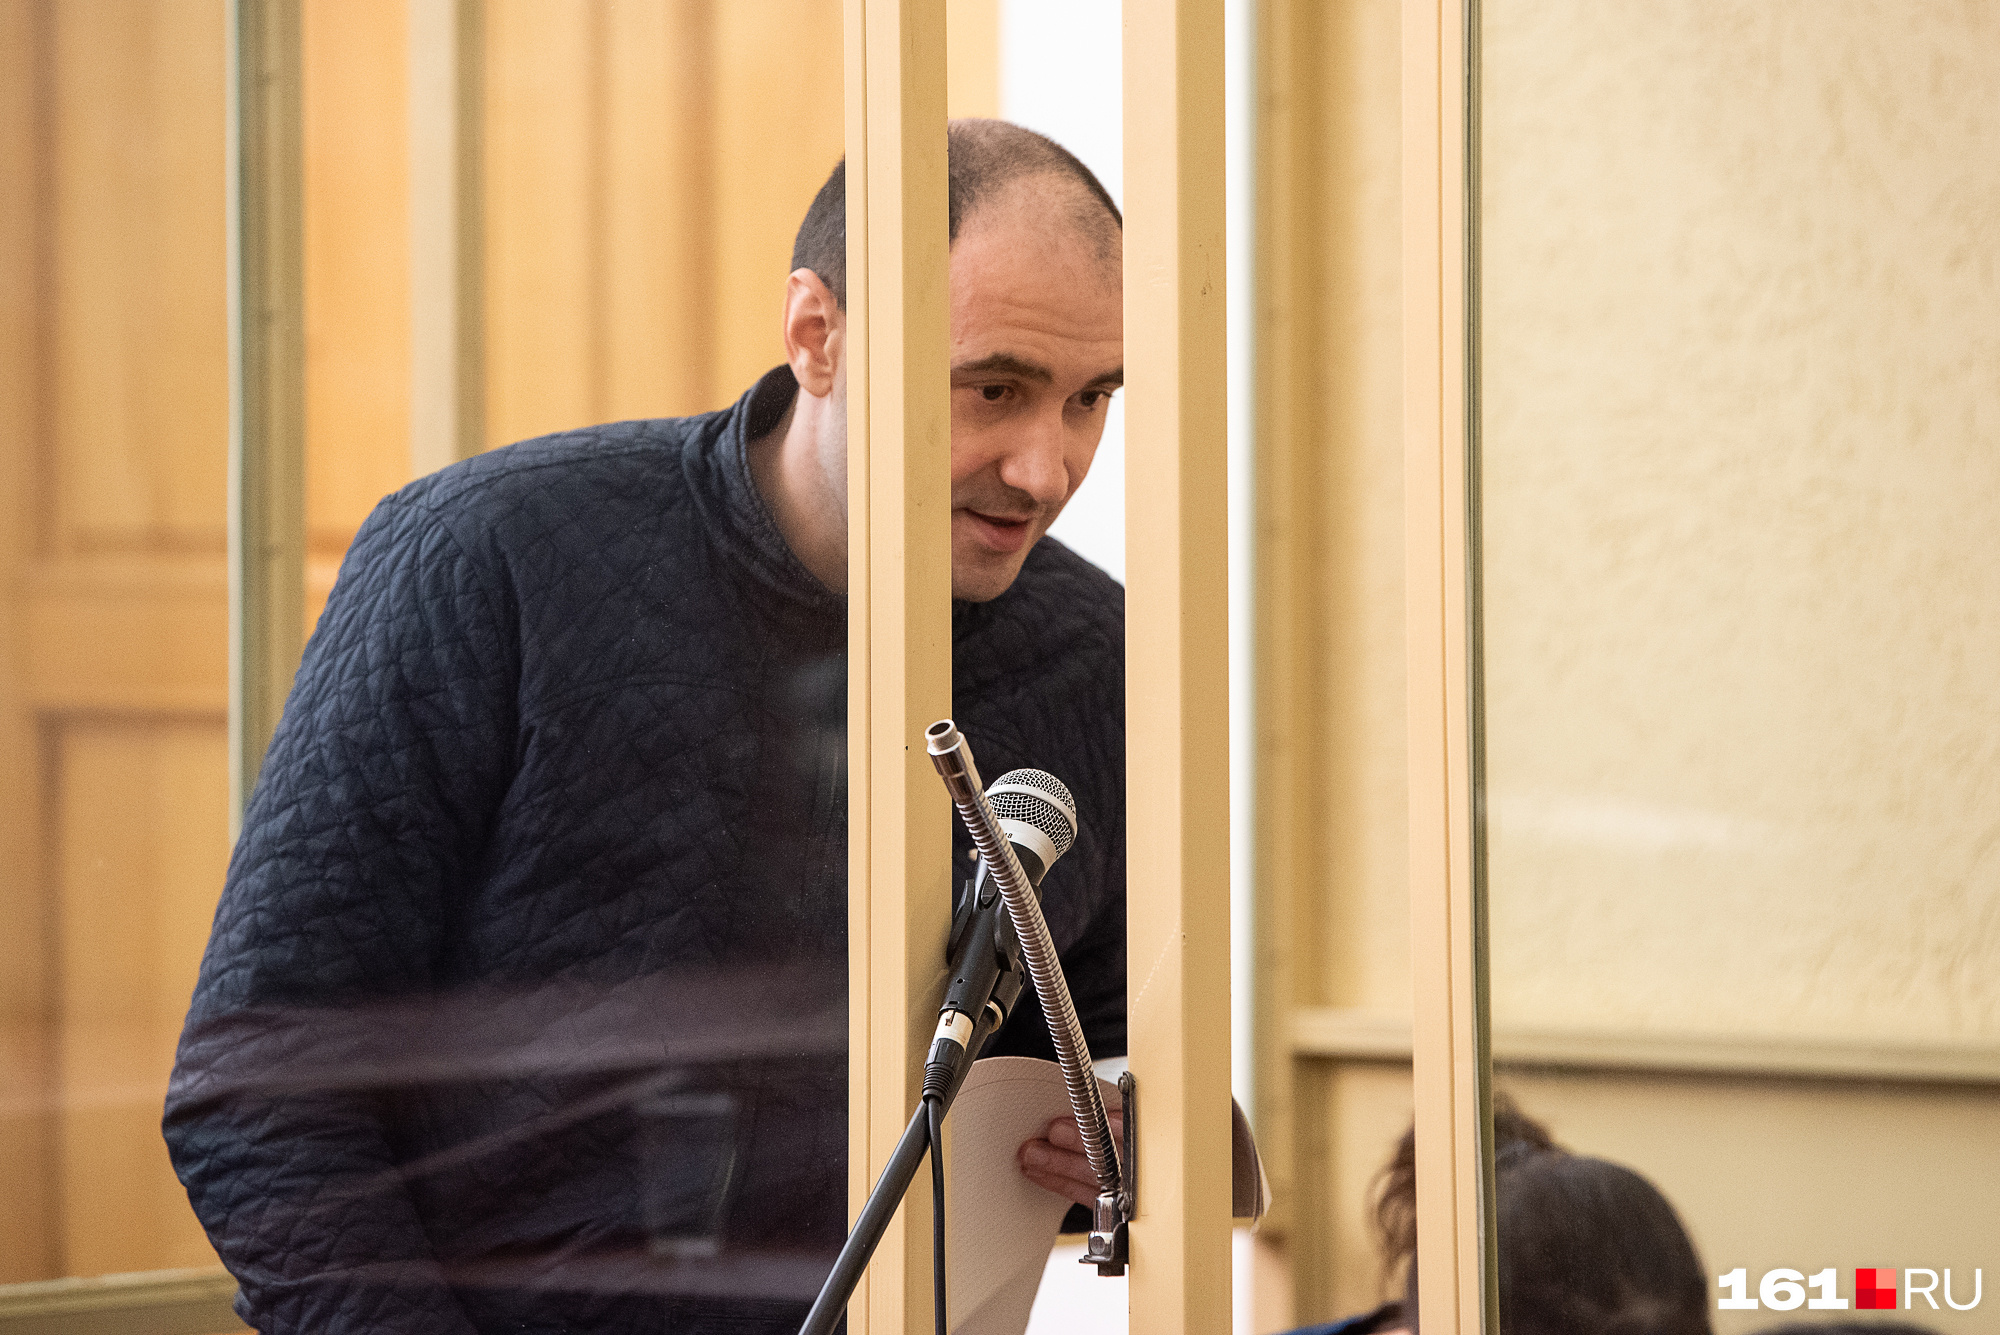 Сергей Синельник обвинил прокурора в предвзятости. Ему грозит пожизненное заключение